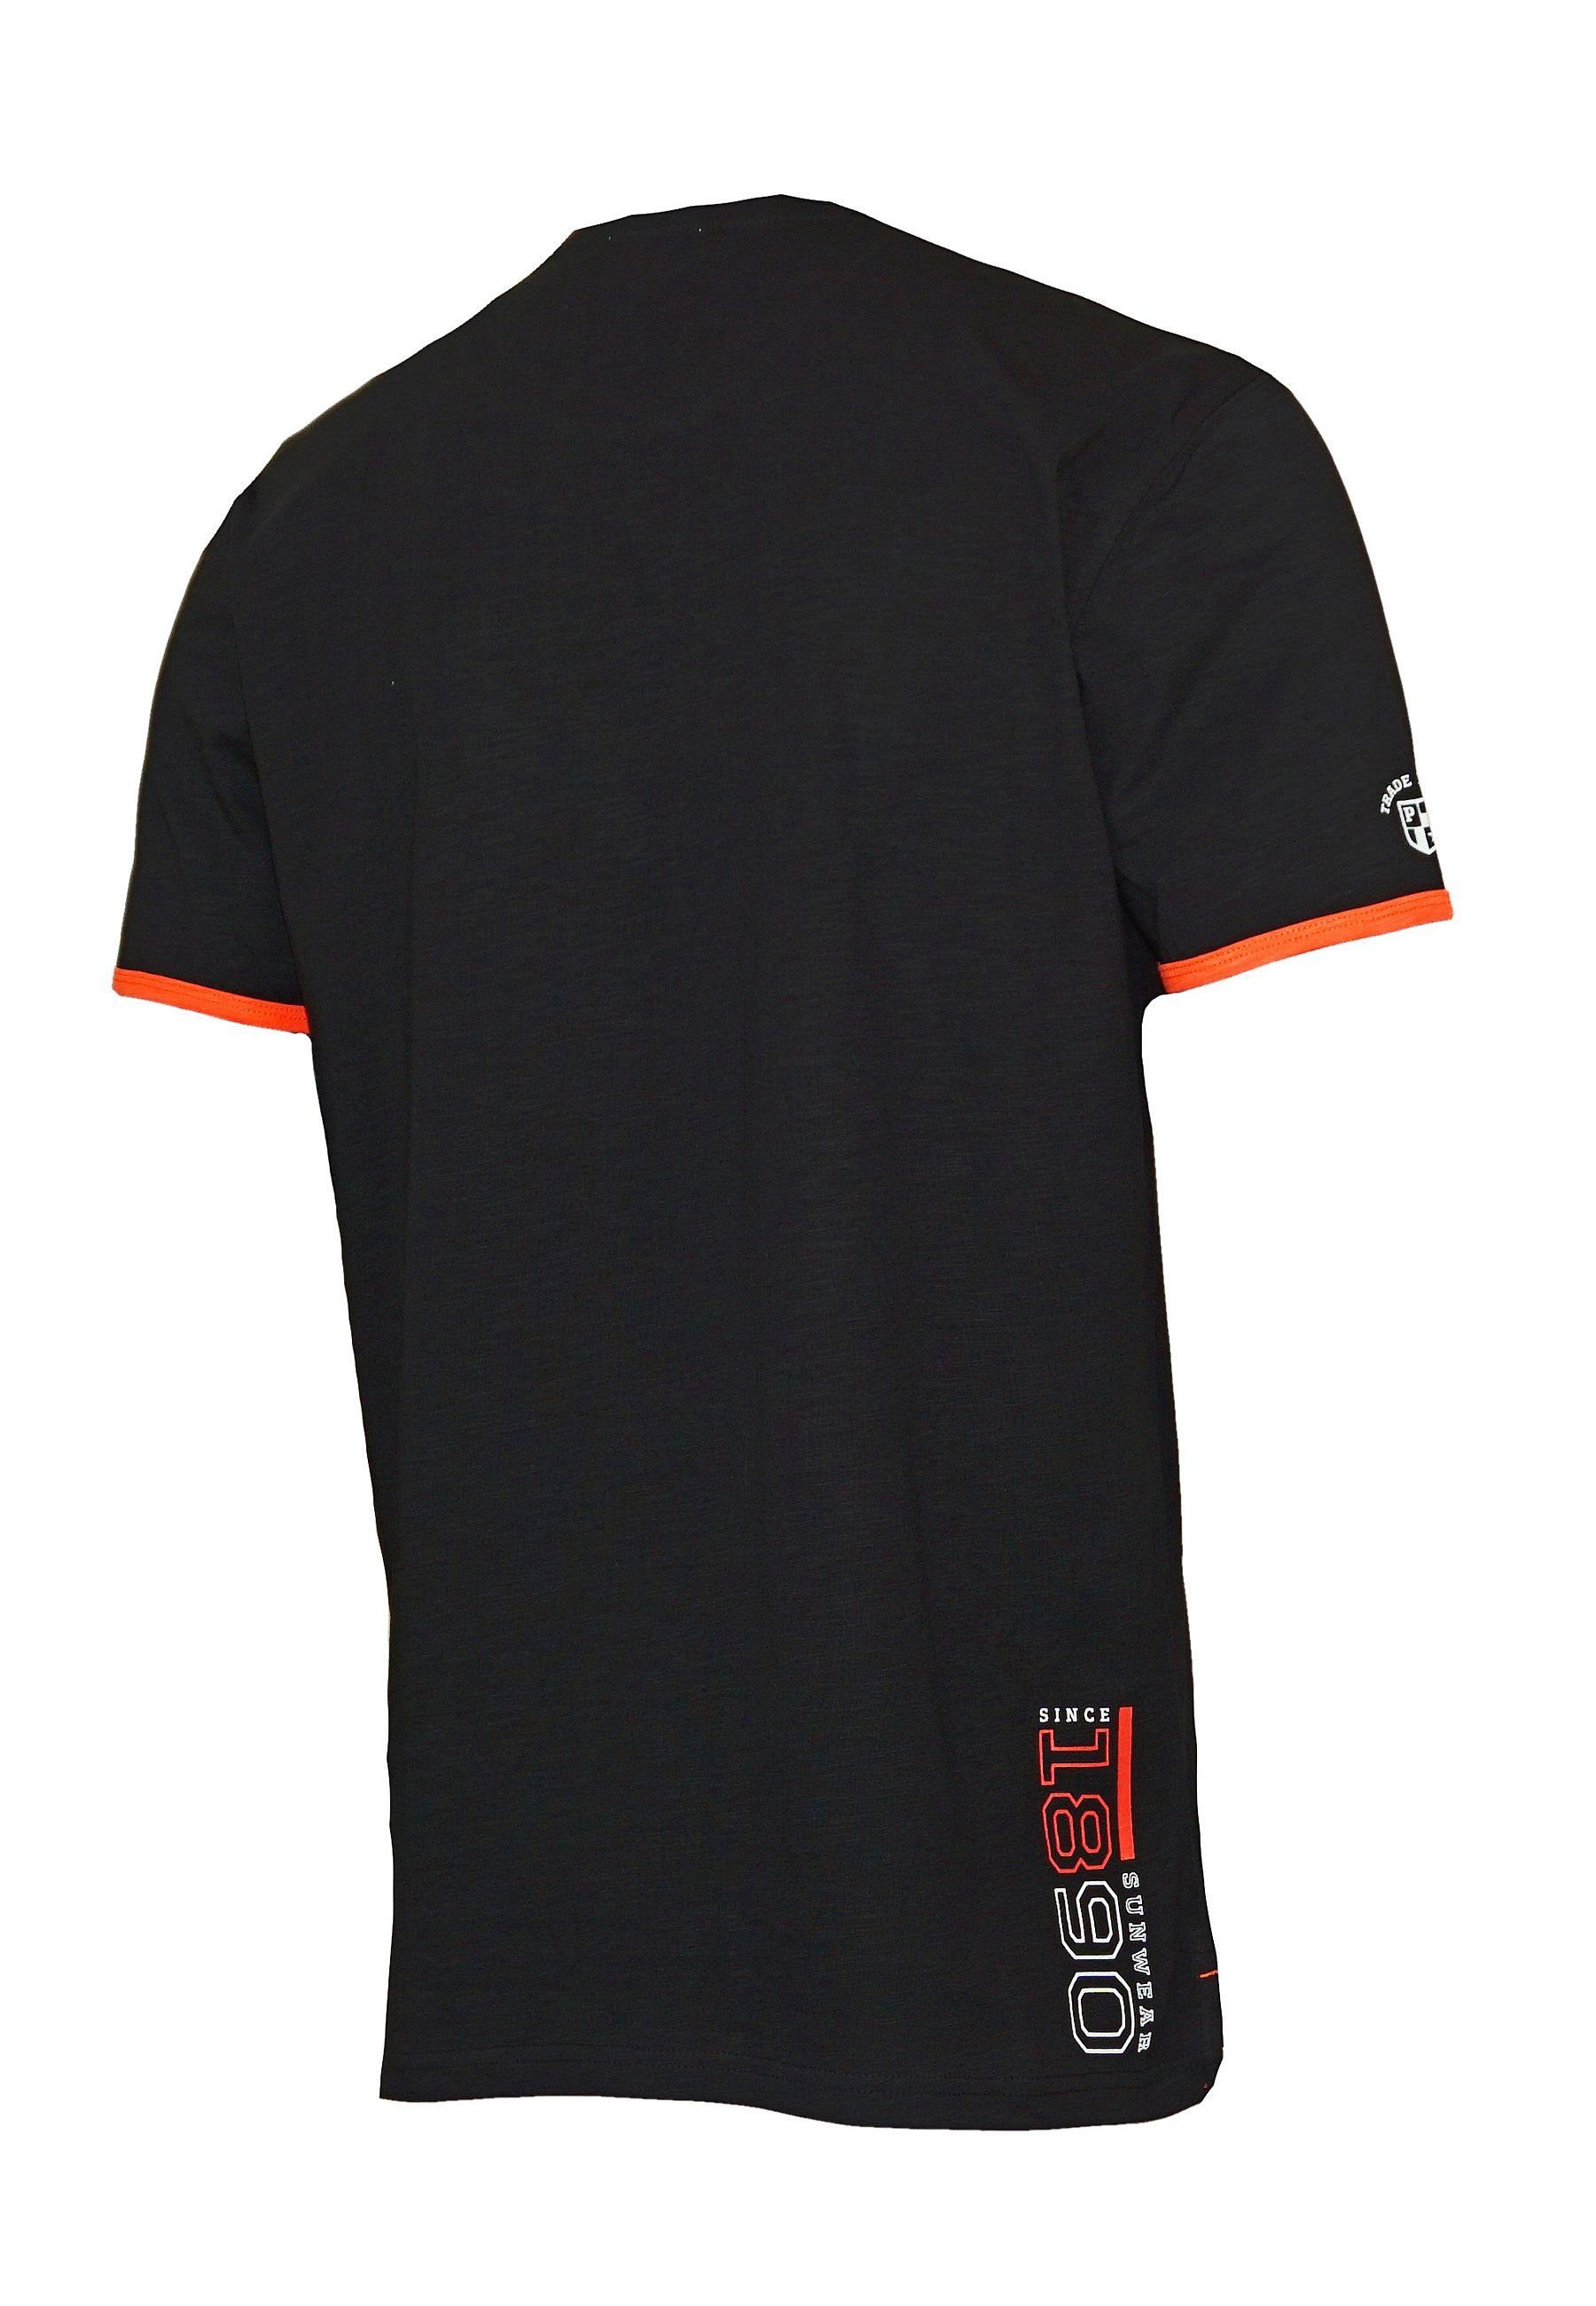 Shirt Assn Emer T-Shirt Polo T-Shirt schwarz U.S.